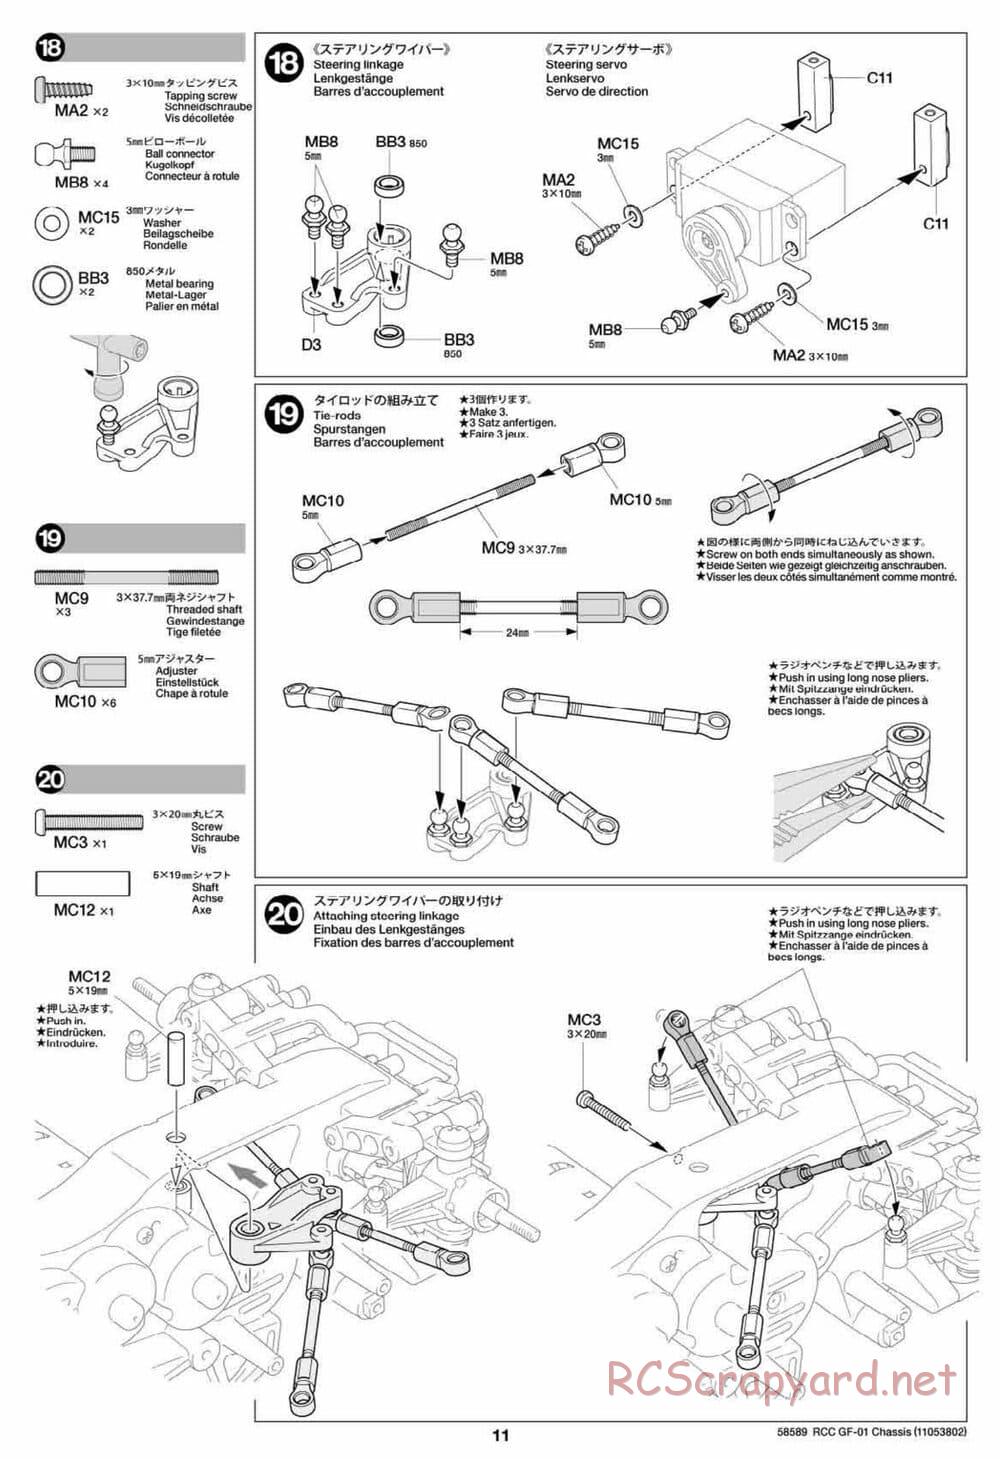 Tamiya - GF-01 Chassis - Manual - Page 11